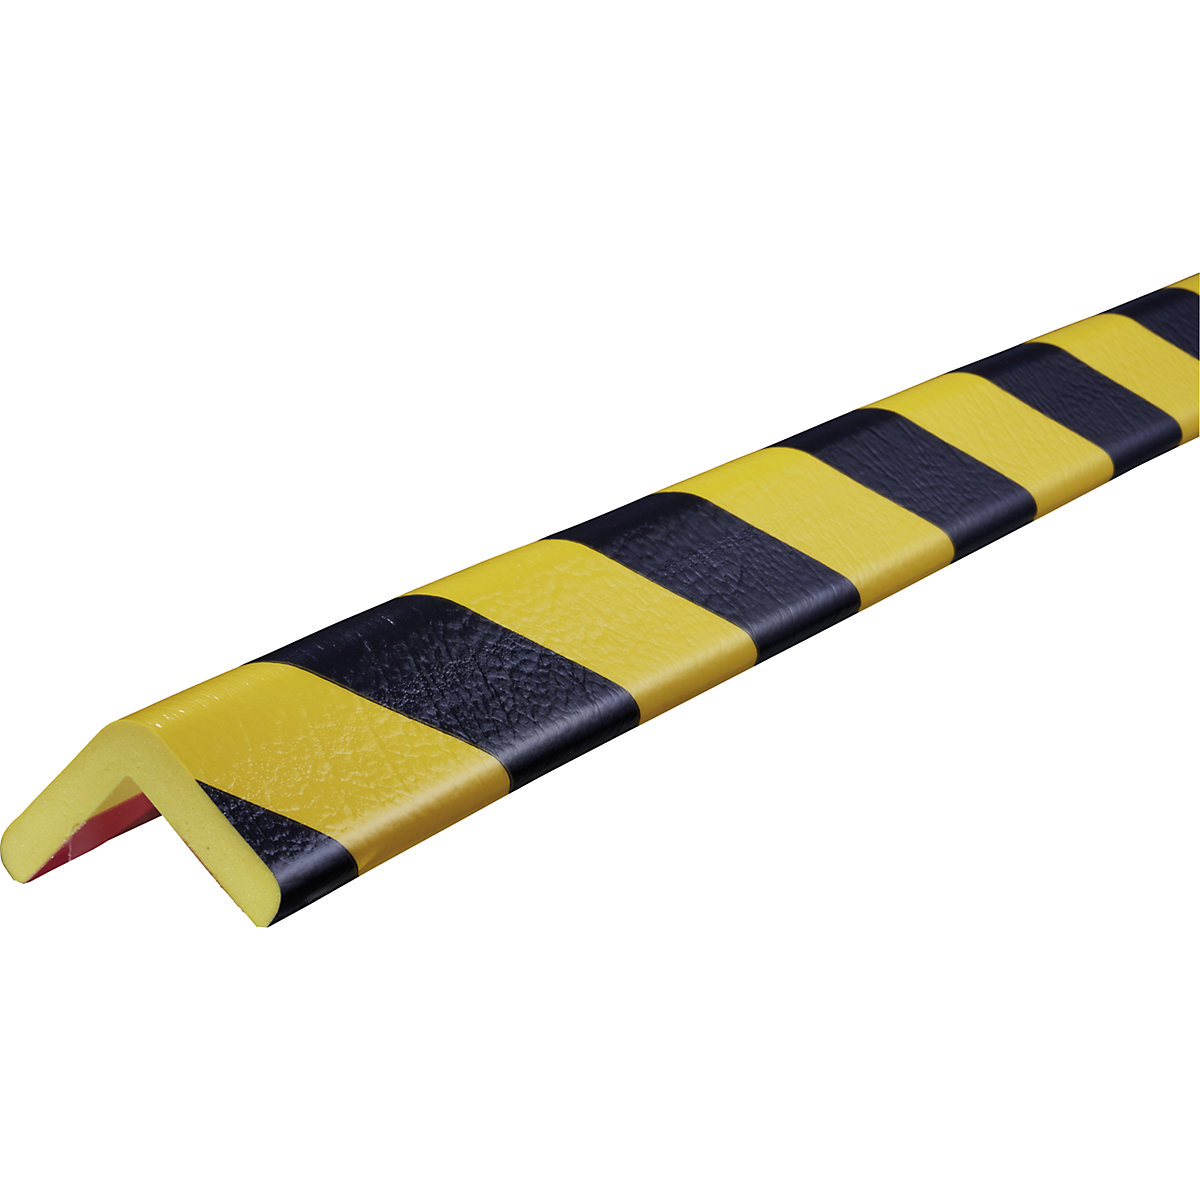 Knuffi® sarokvédő – SHG, H típus, 1 db 5 m-es tekercs, fekete / sárga-14